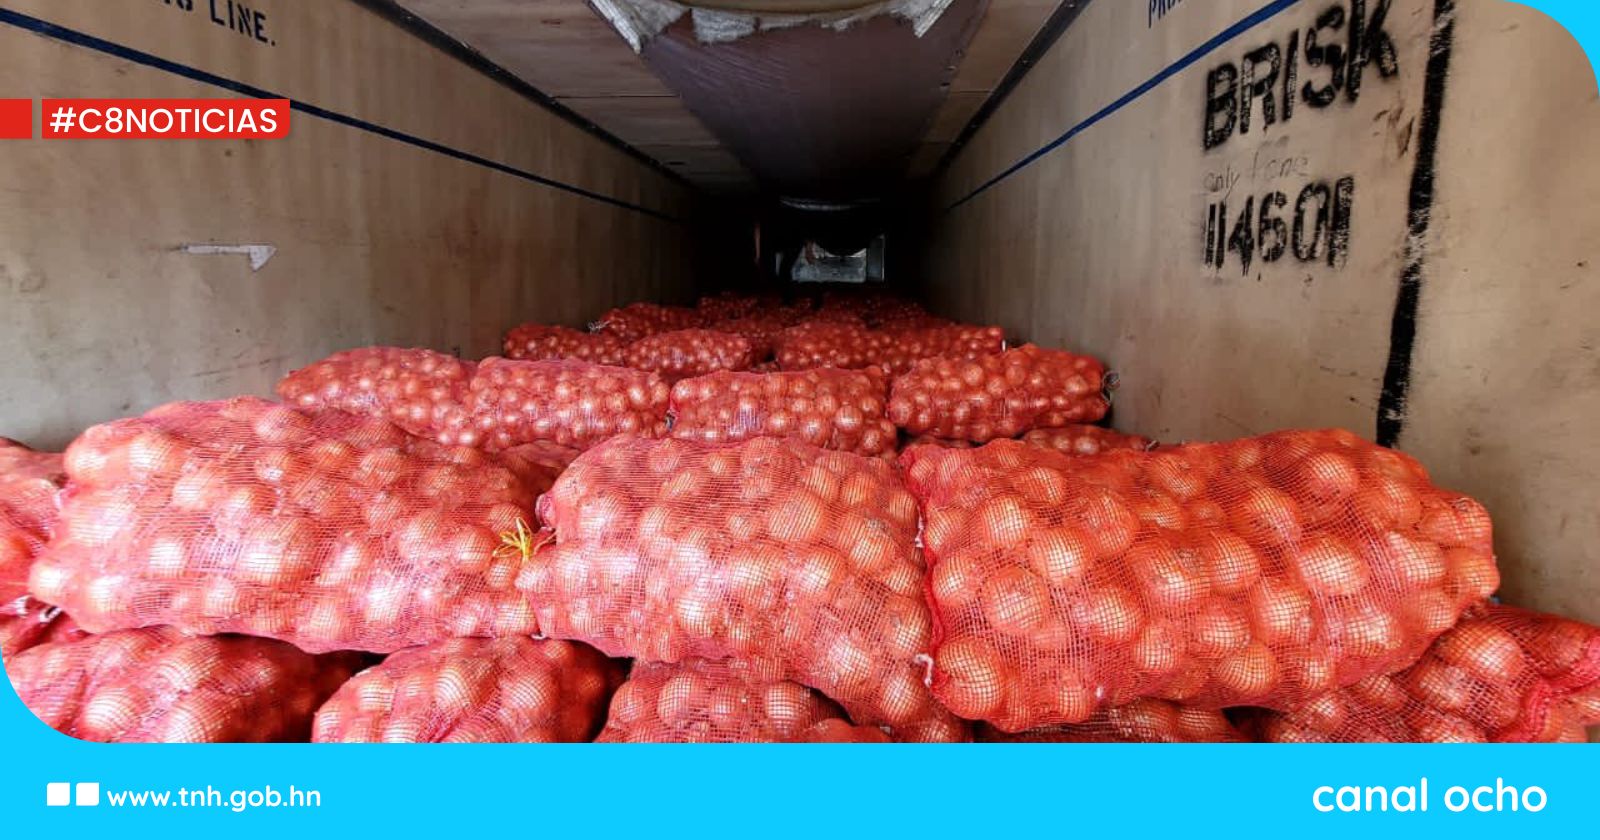 Aduanas confirma la incautación de 40,000 libras de cebolla